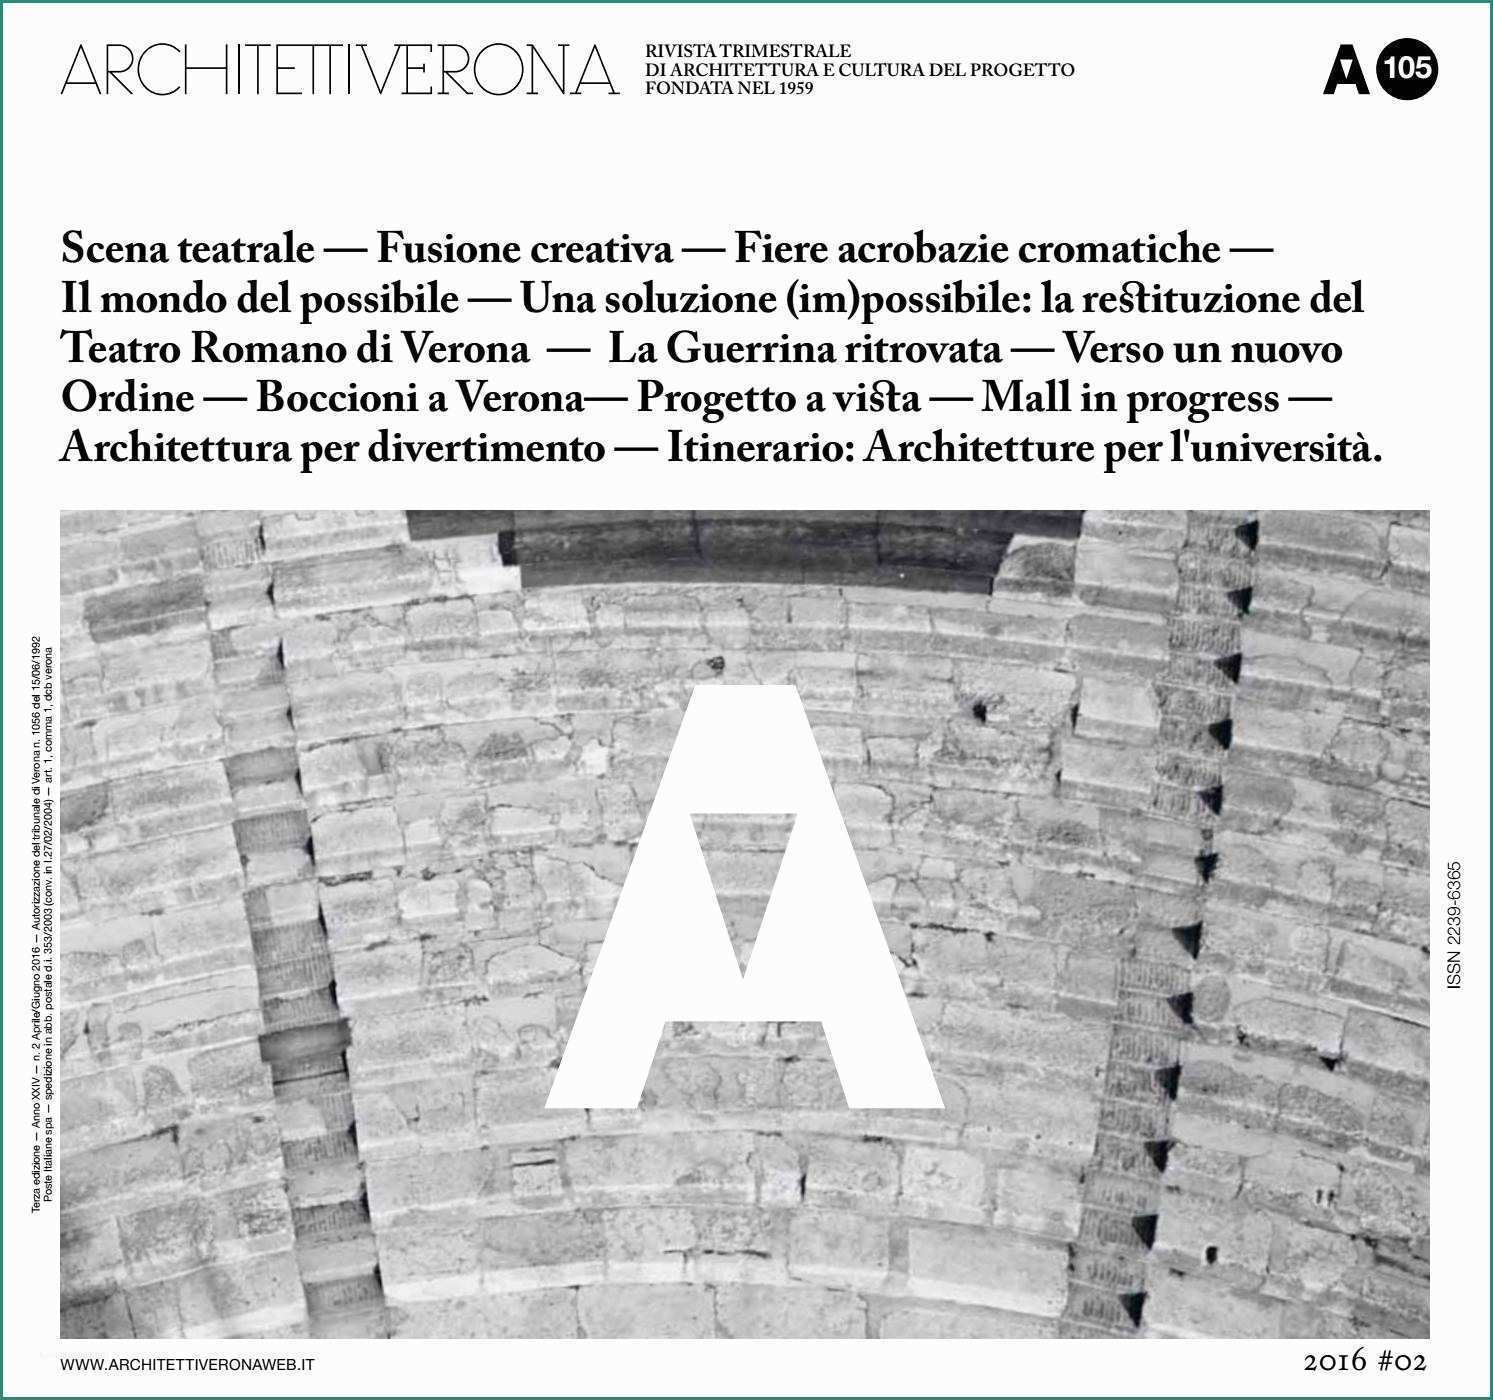 Lavastoviglie Non Riscalda L Acqua E Architettiverona 105 by Architettiverona issuu